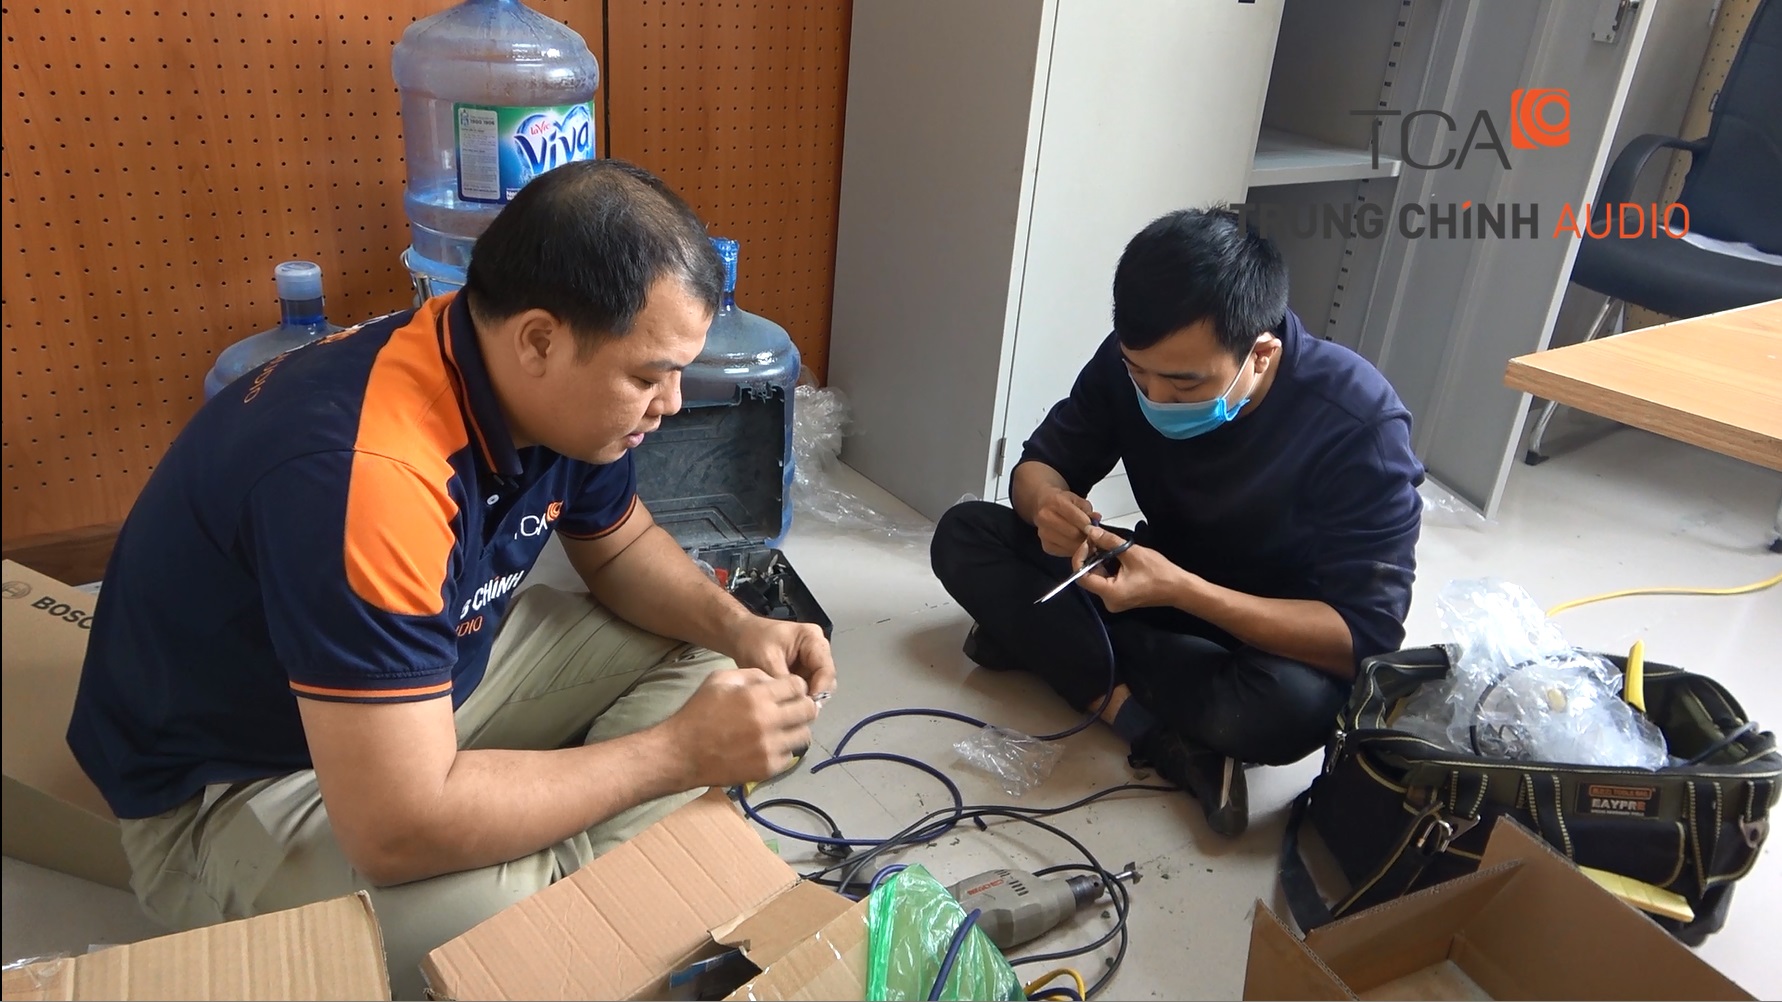 Lắp đặt âm thanh phòng họp giải pháp trực tuyến cho điểm cầu: BHXH huyện Văn Lâm, Hưng Yên